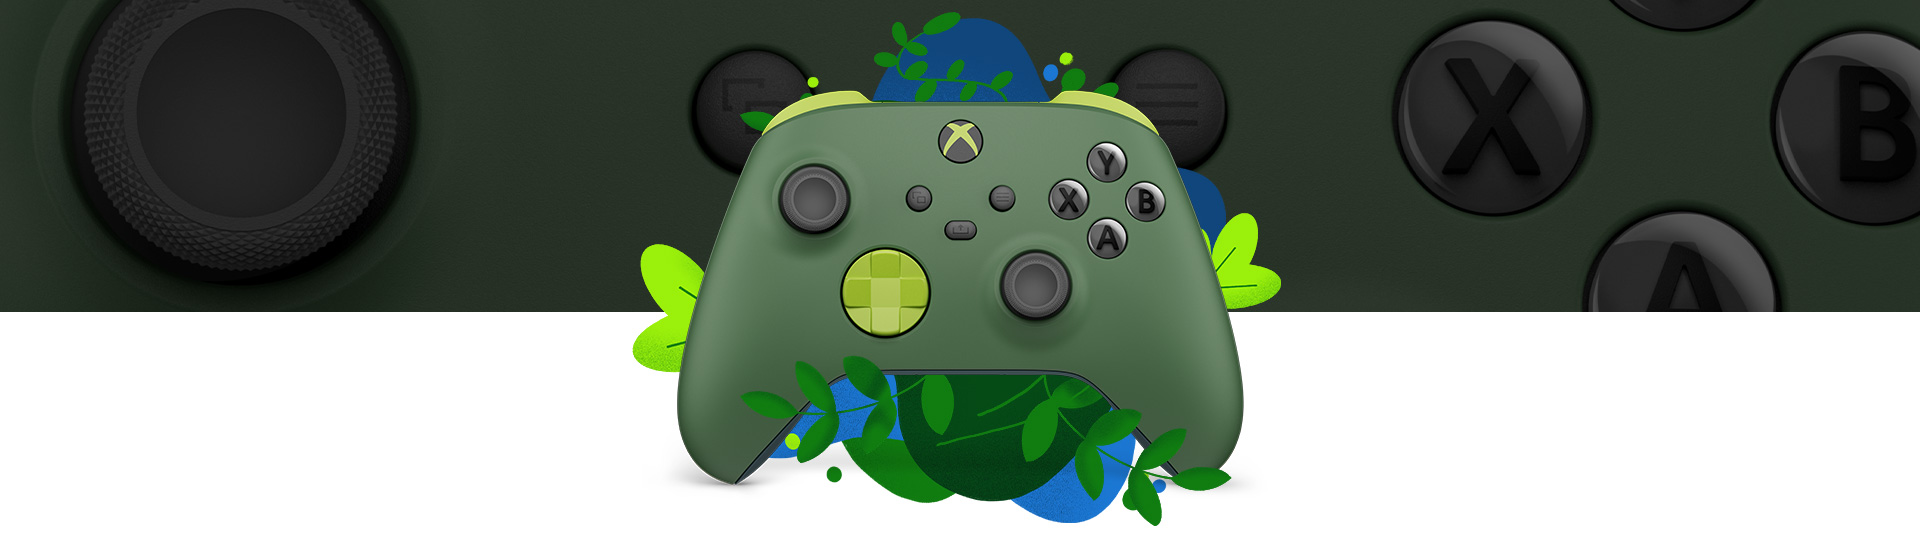 Ansicht des Xbox Wireless Controllers – Remix Special Edition, umgeben von Pflanzen und blauen Wasserspritzern mit einer Nahaufnahme im Hintergrund.